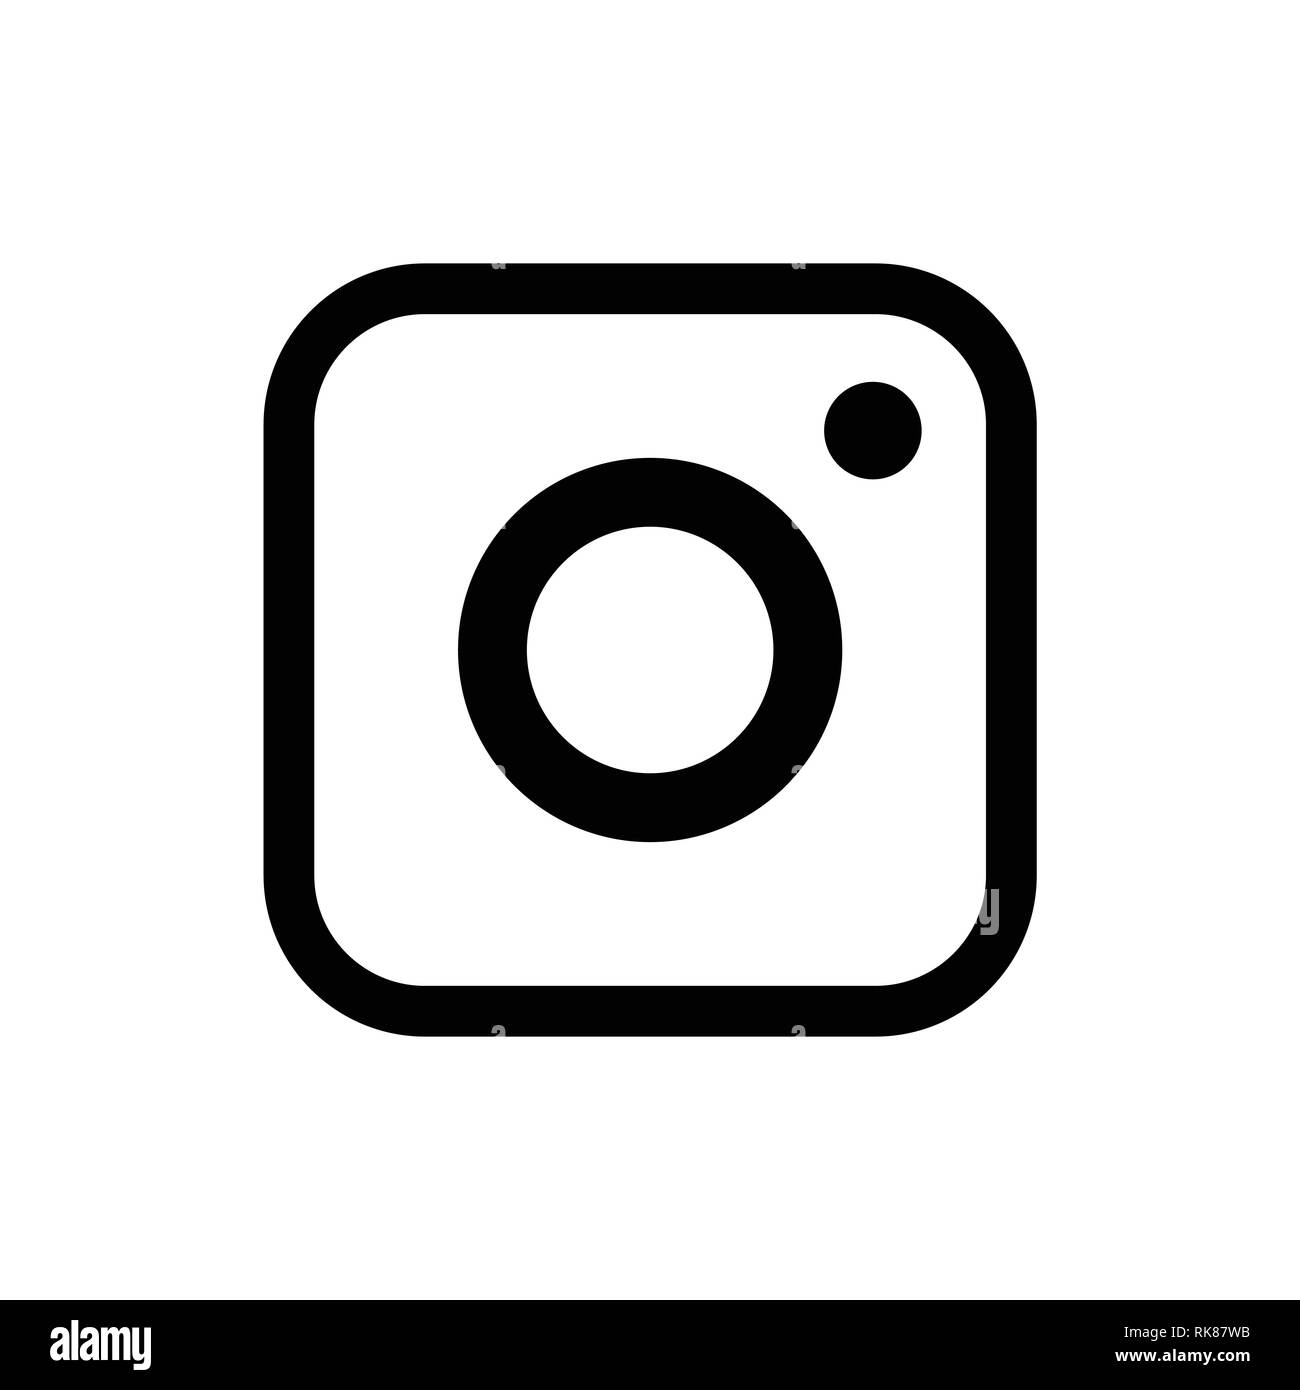 Riga, Lettland - 7. Juli 2017: Instagram Schriftzug Kamera Symbol, Logo am PC-Bildschirm. Instagram - kostenlose Anwendung für Fotos und Videos, die mit der Stock Vektor